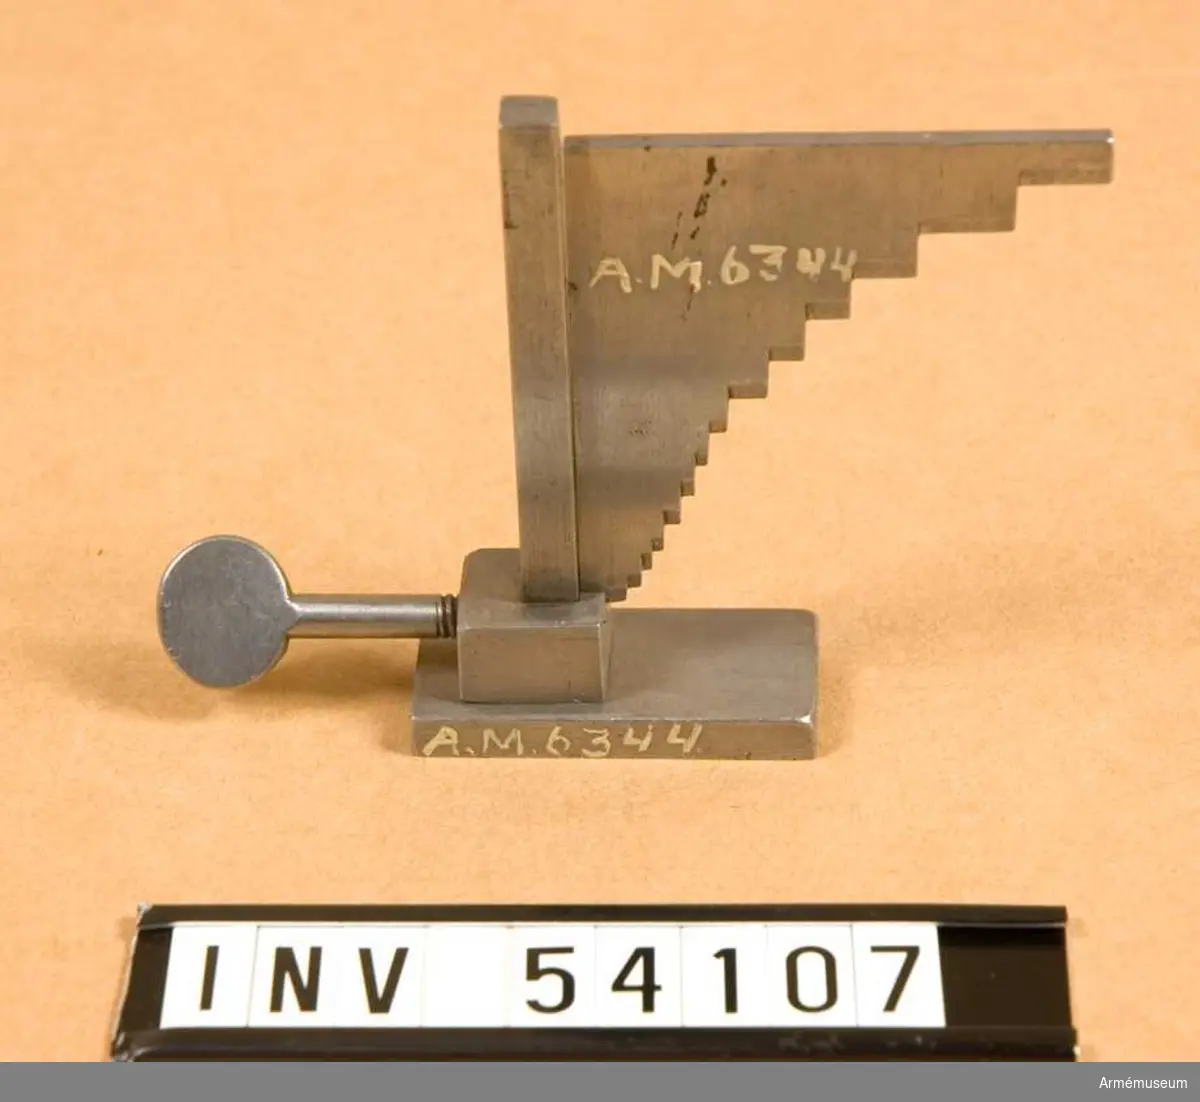 Grupp E VIII. 
Ingår i en sats verktyg för ställning av 10,15 mm kammarskjutningsgevär m/1884. 